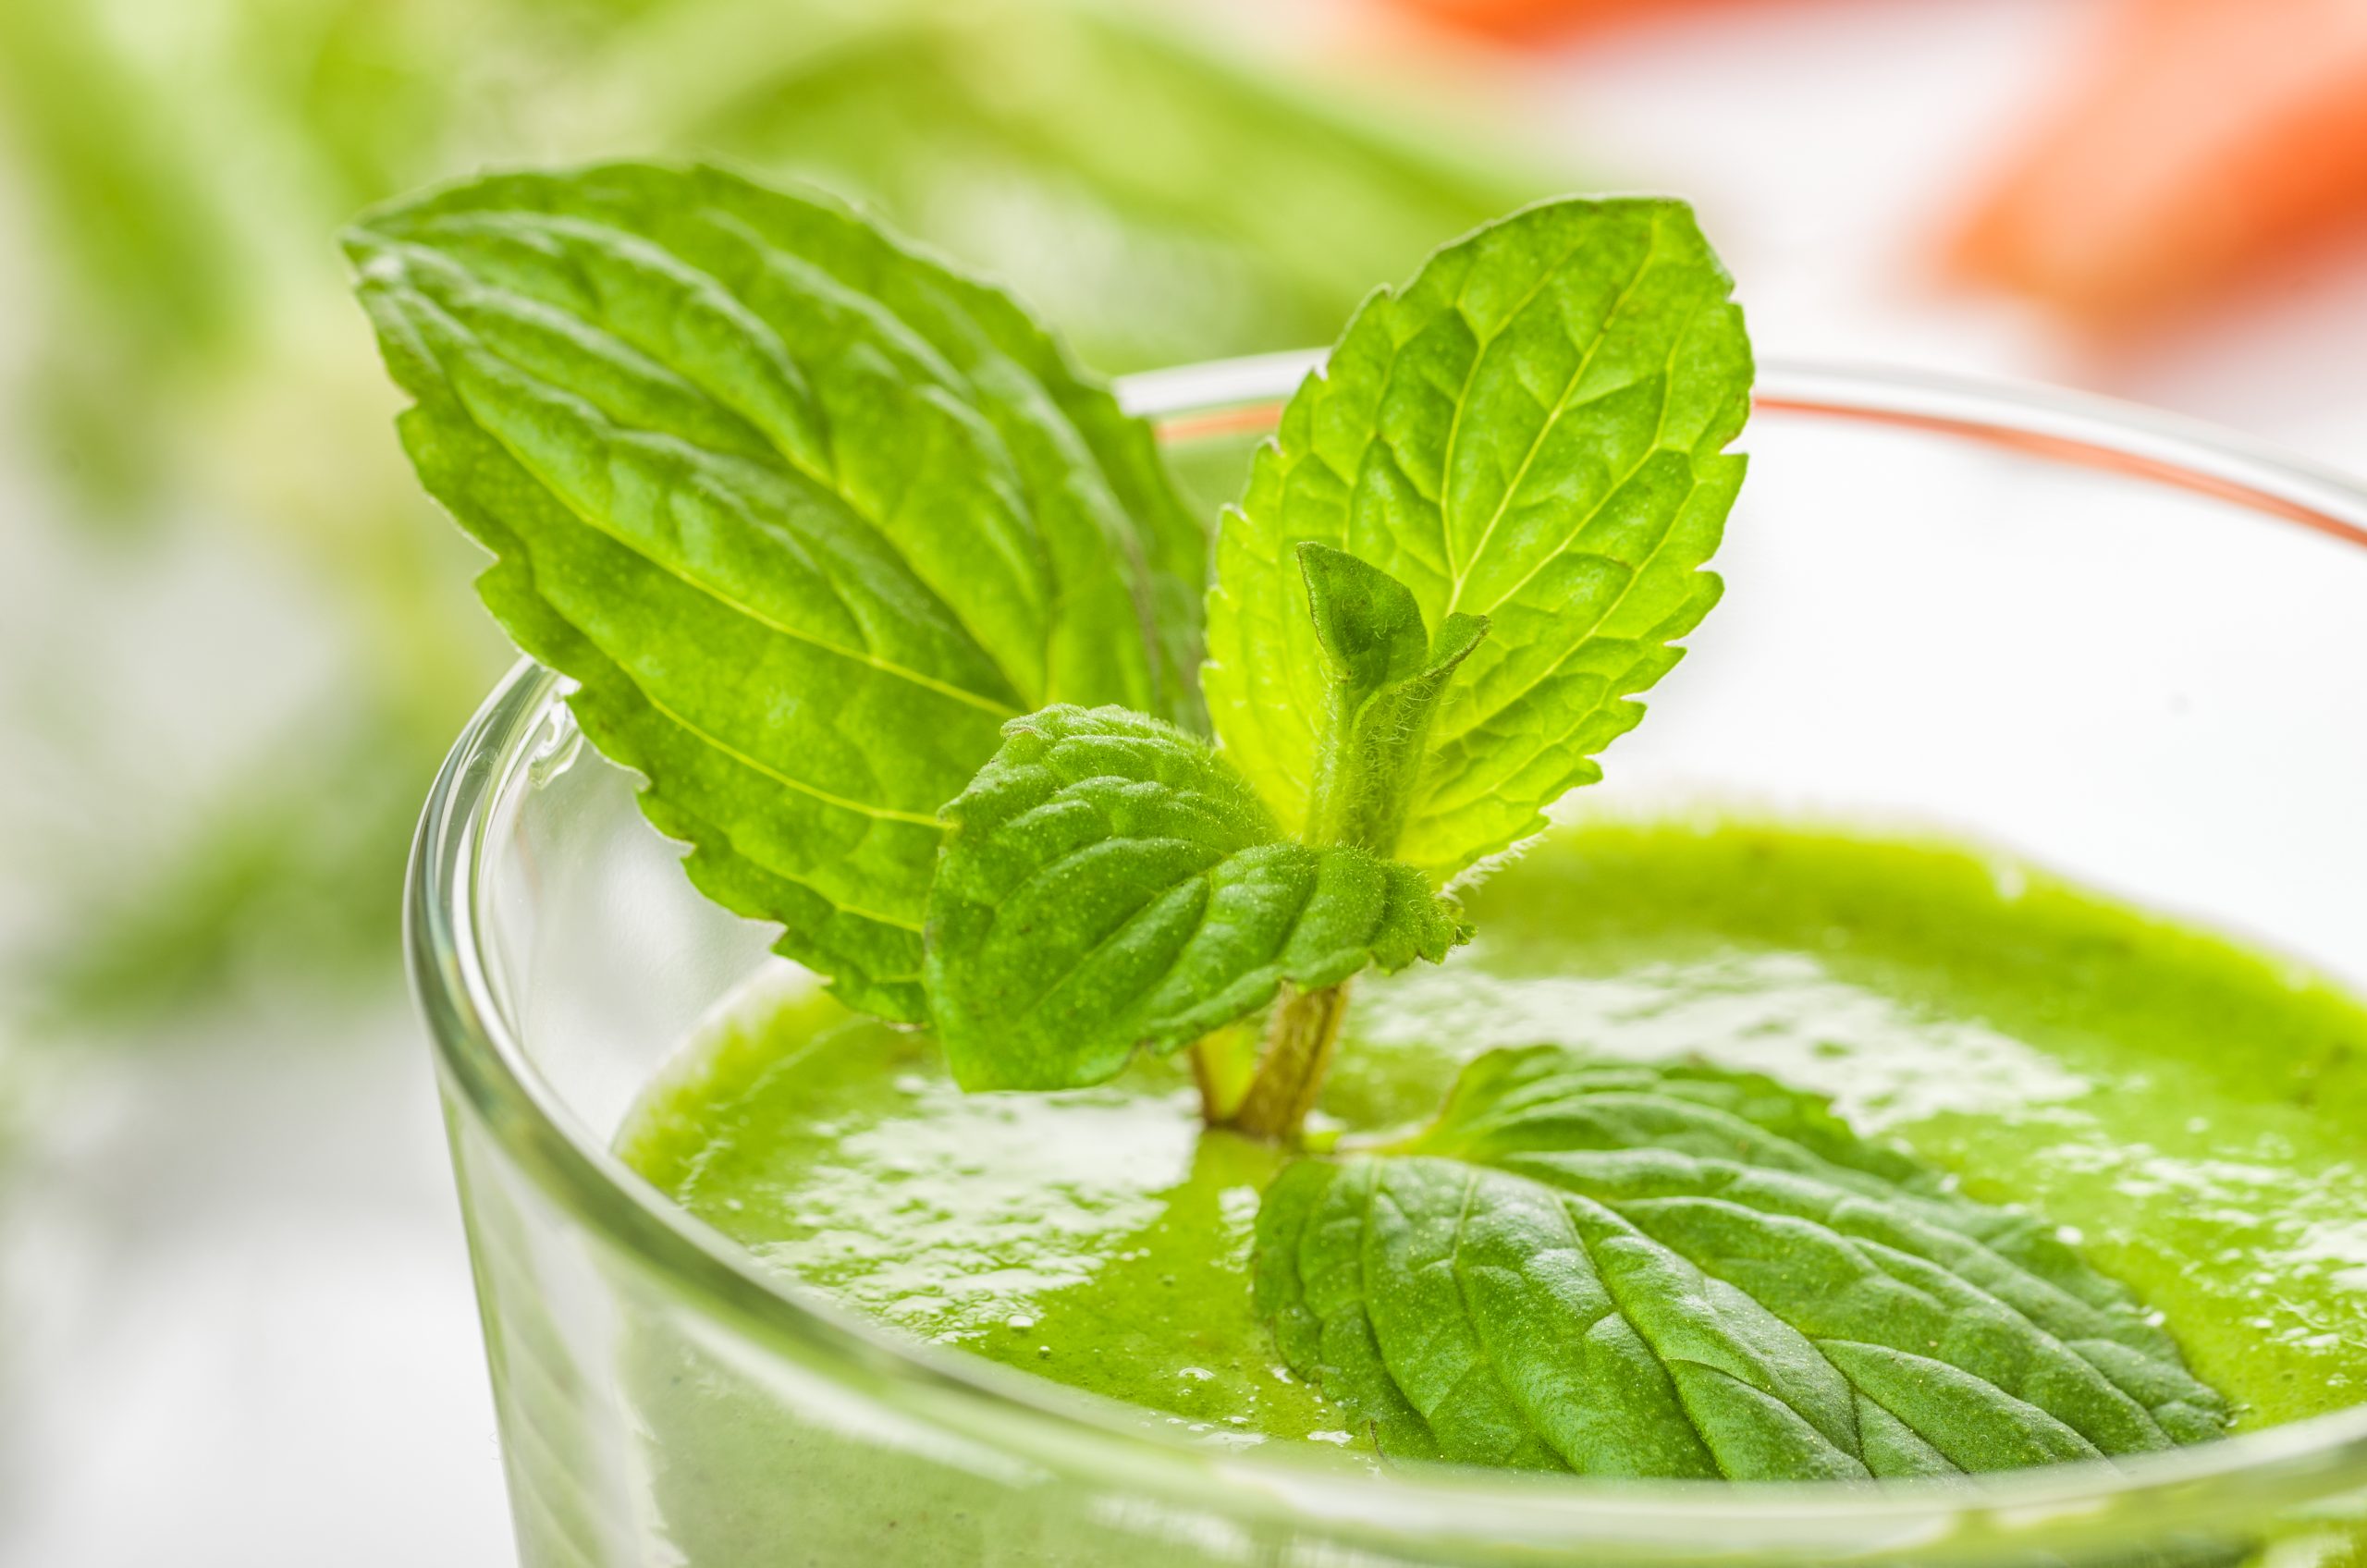 La receta del zumo verde del que todos hablan: ayuda a adelgazar la grasa del vientre